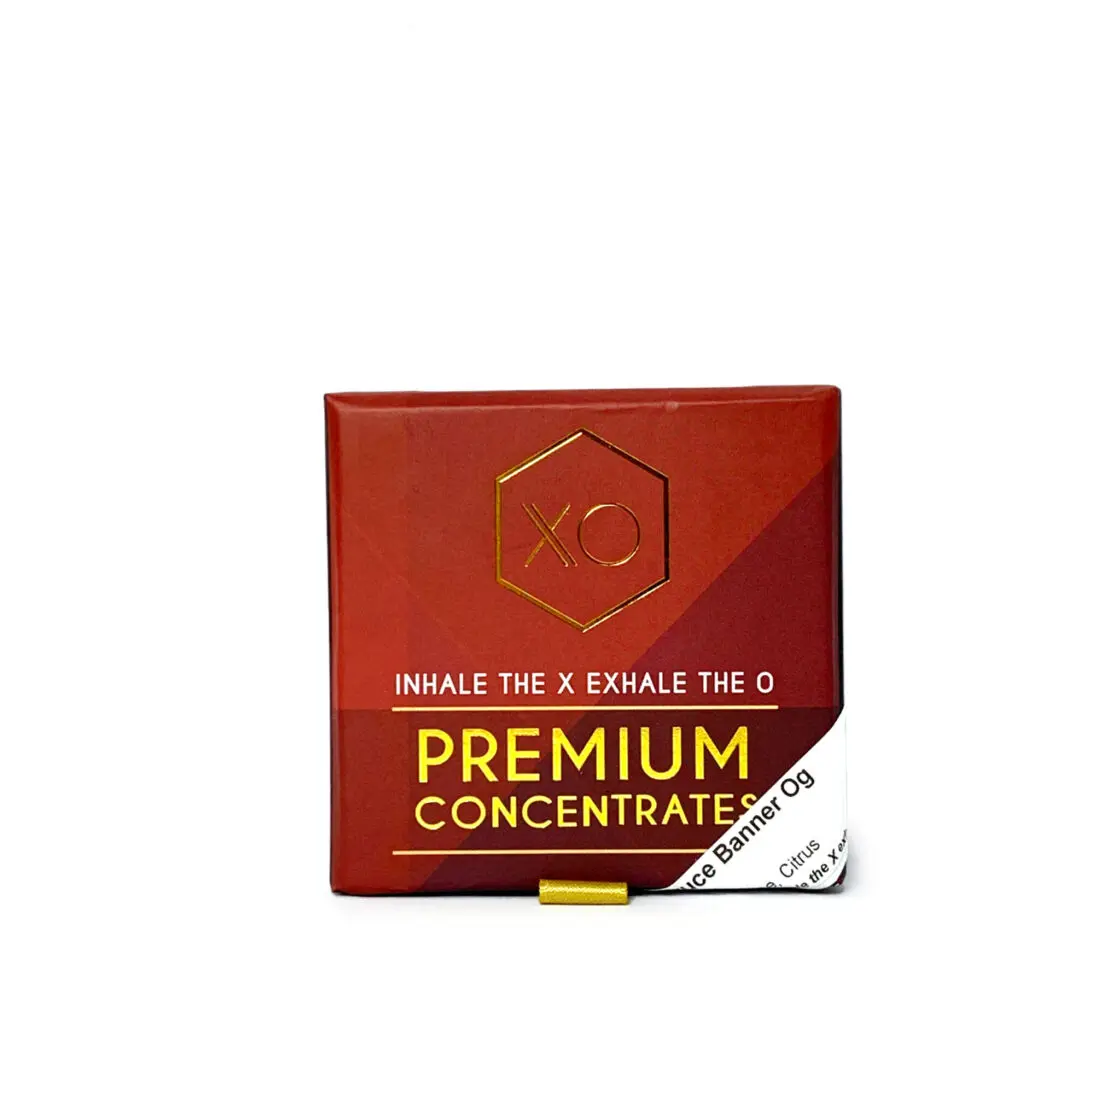 Xo Premium Concentrates – Shatter (2g) – Bruce Banner Og